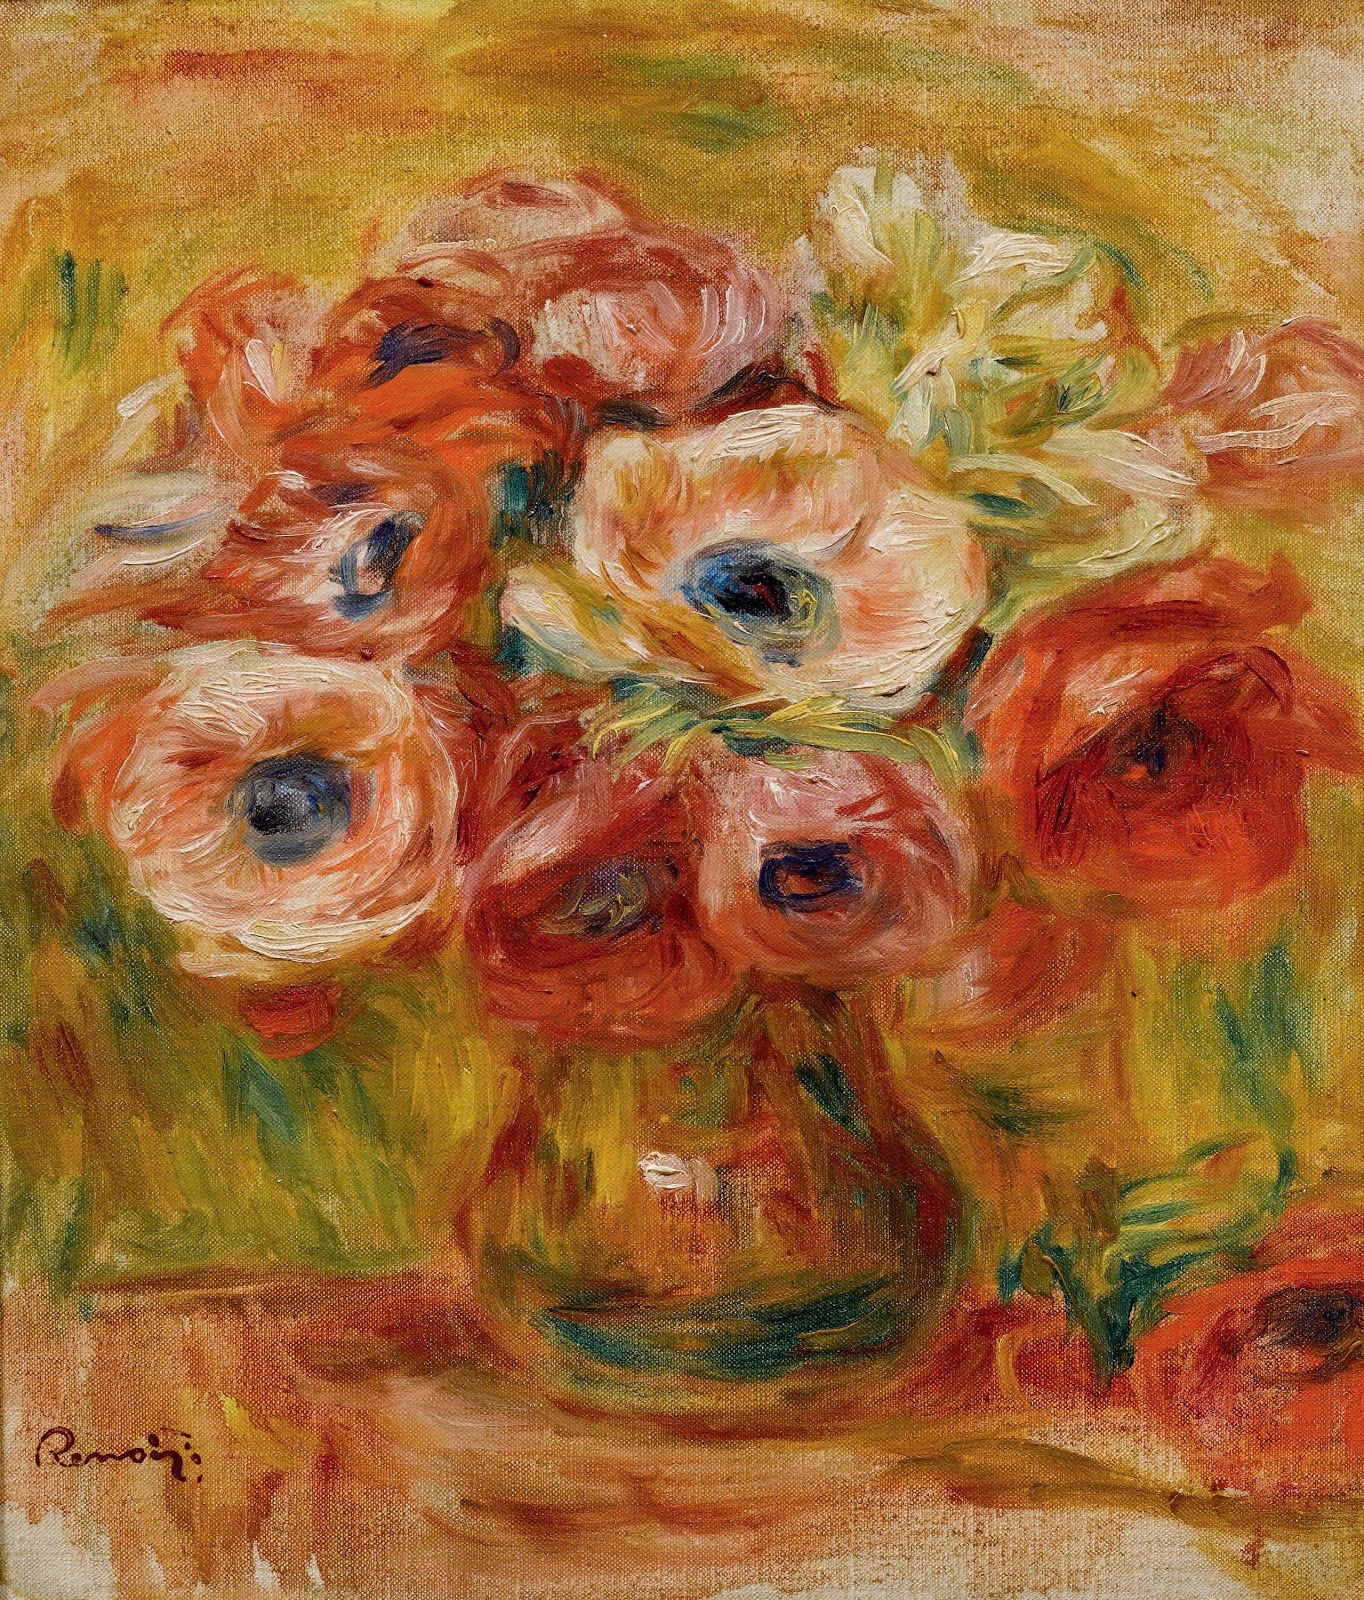 Pierre+Auguste+Renoir-1841-1-19 (734).jpg